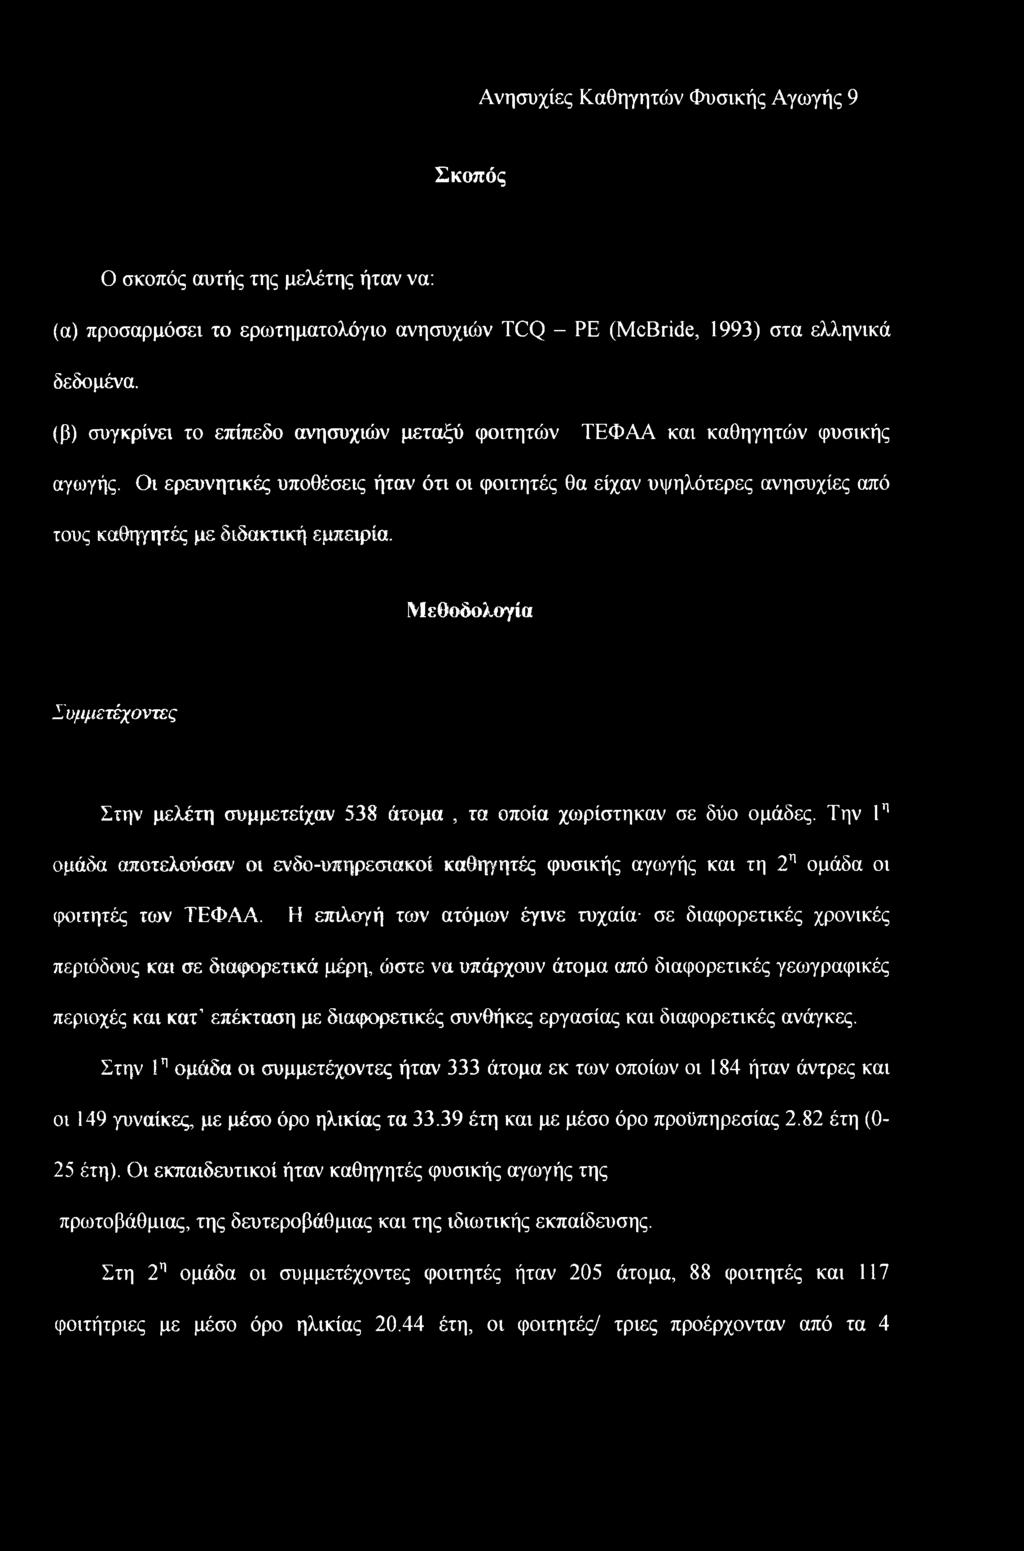 Ανησυχίες Καθηγητών Φυσικής Αγωγής 9 Σκοπός Ο σκοπός αυτής της μελέτης ήταν να: (α) προσαρμόσει το ερωτηματολόγιο ανησυχιών TCQ - PE (McBride, 1993) στα ελληνικά δεδομένα.